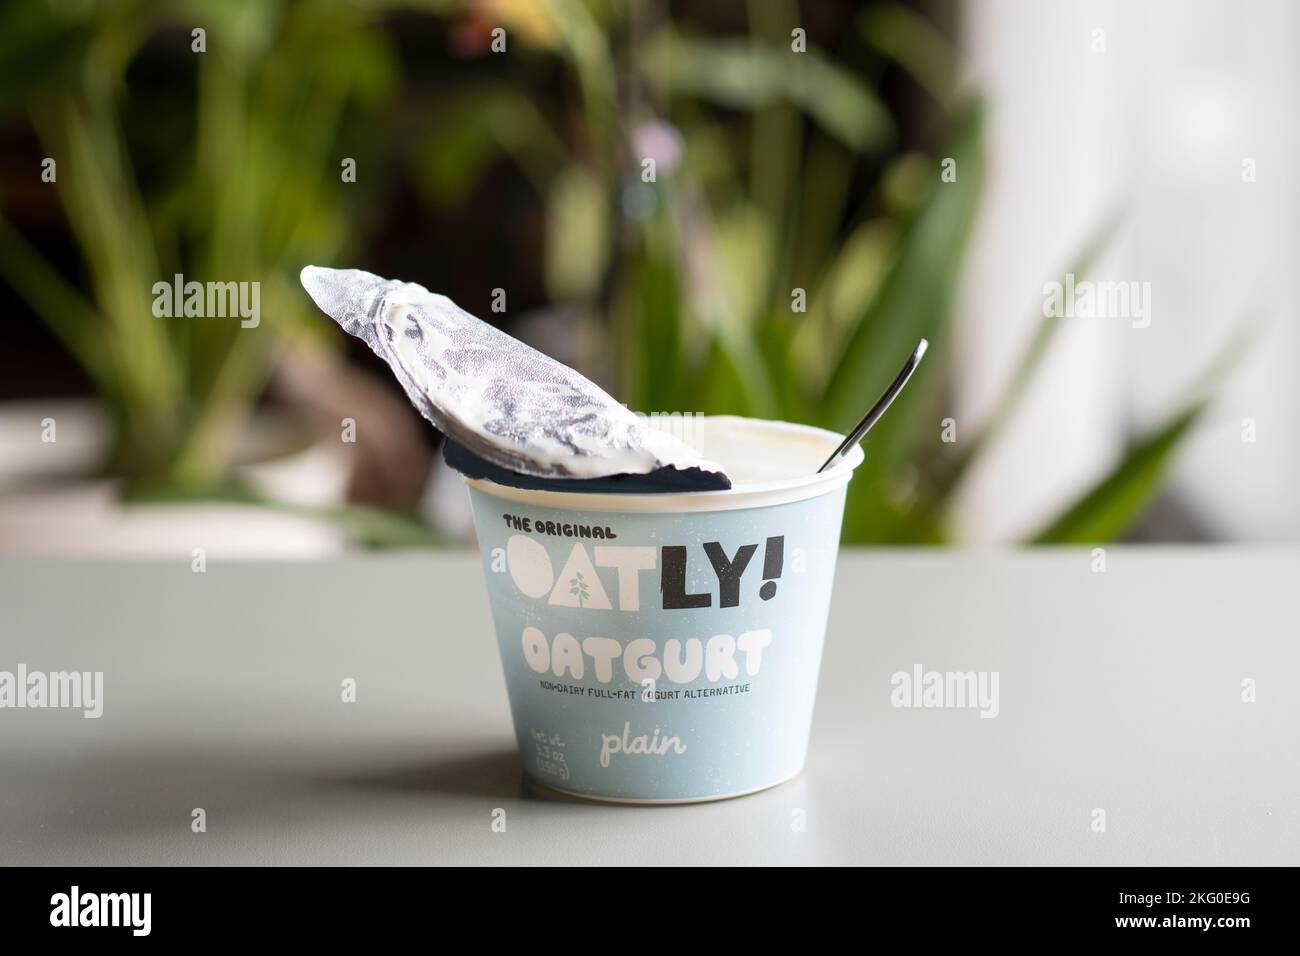 Une tasse d'oatgurt ordinaire de marque Oatly, une alternative de yaourt à la graisse non laitière produite par Oatly Group AB, avec une cuillère en elle, isolée sur une table. Banque D'Images